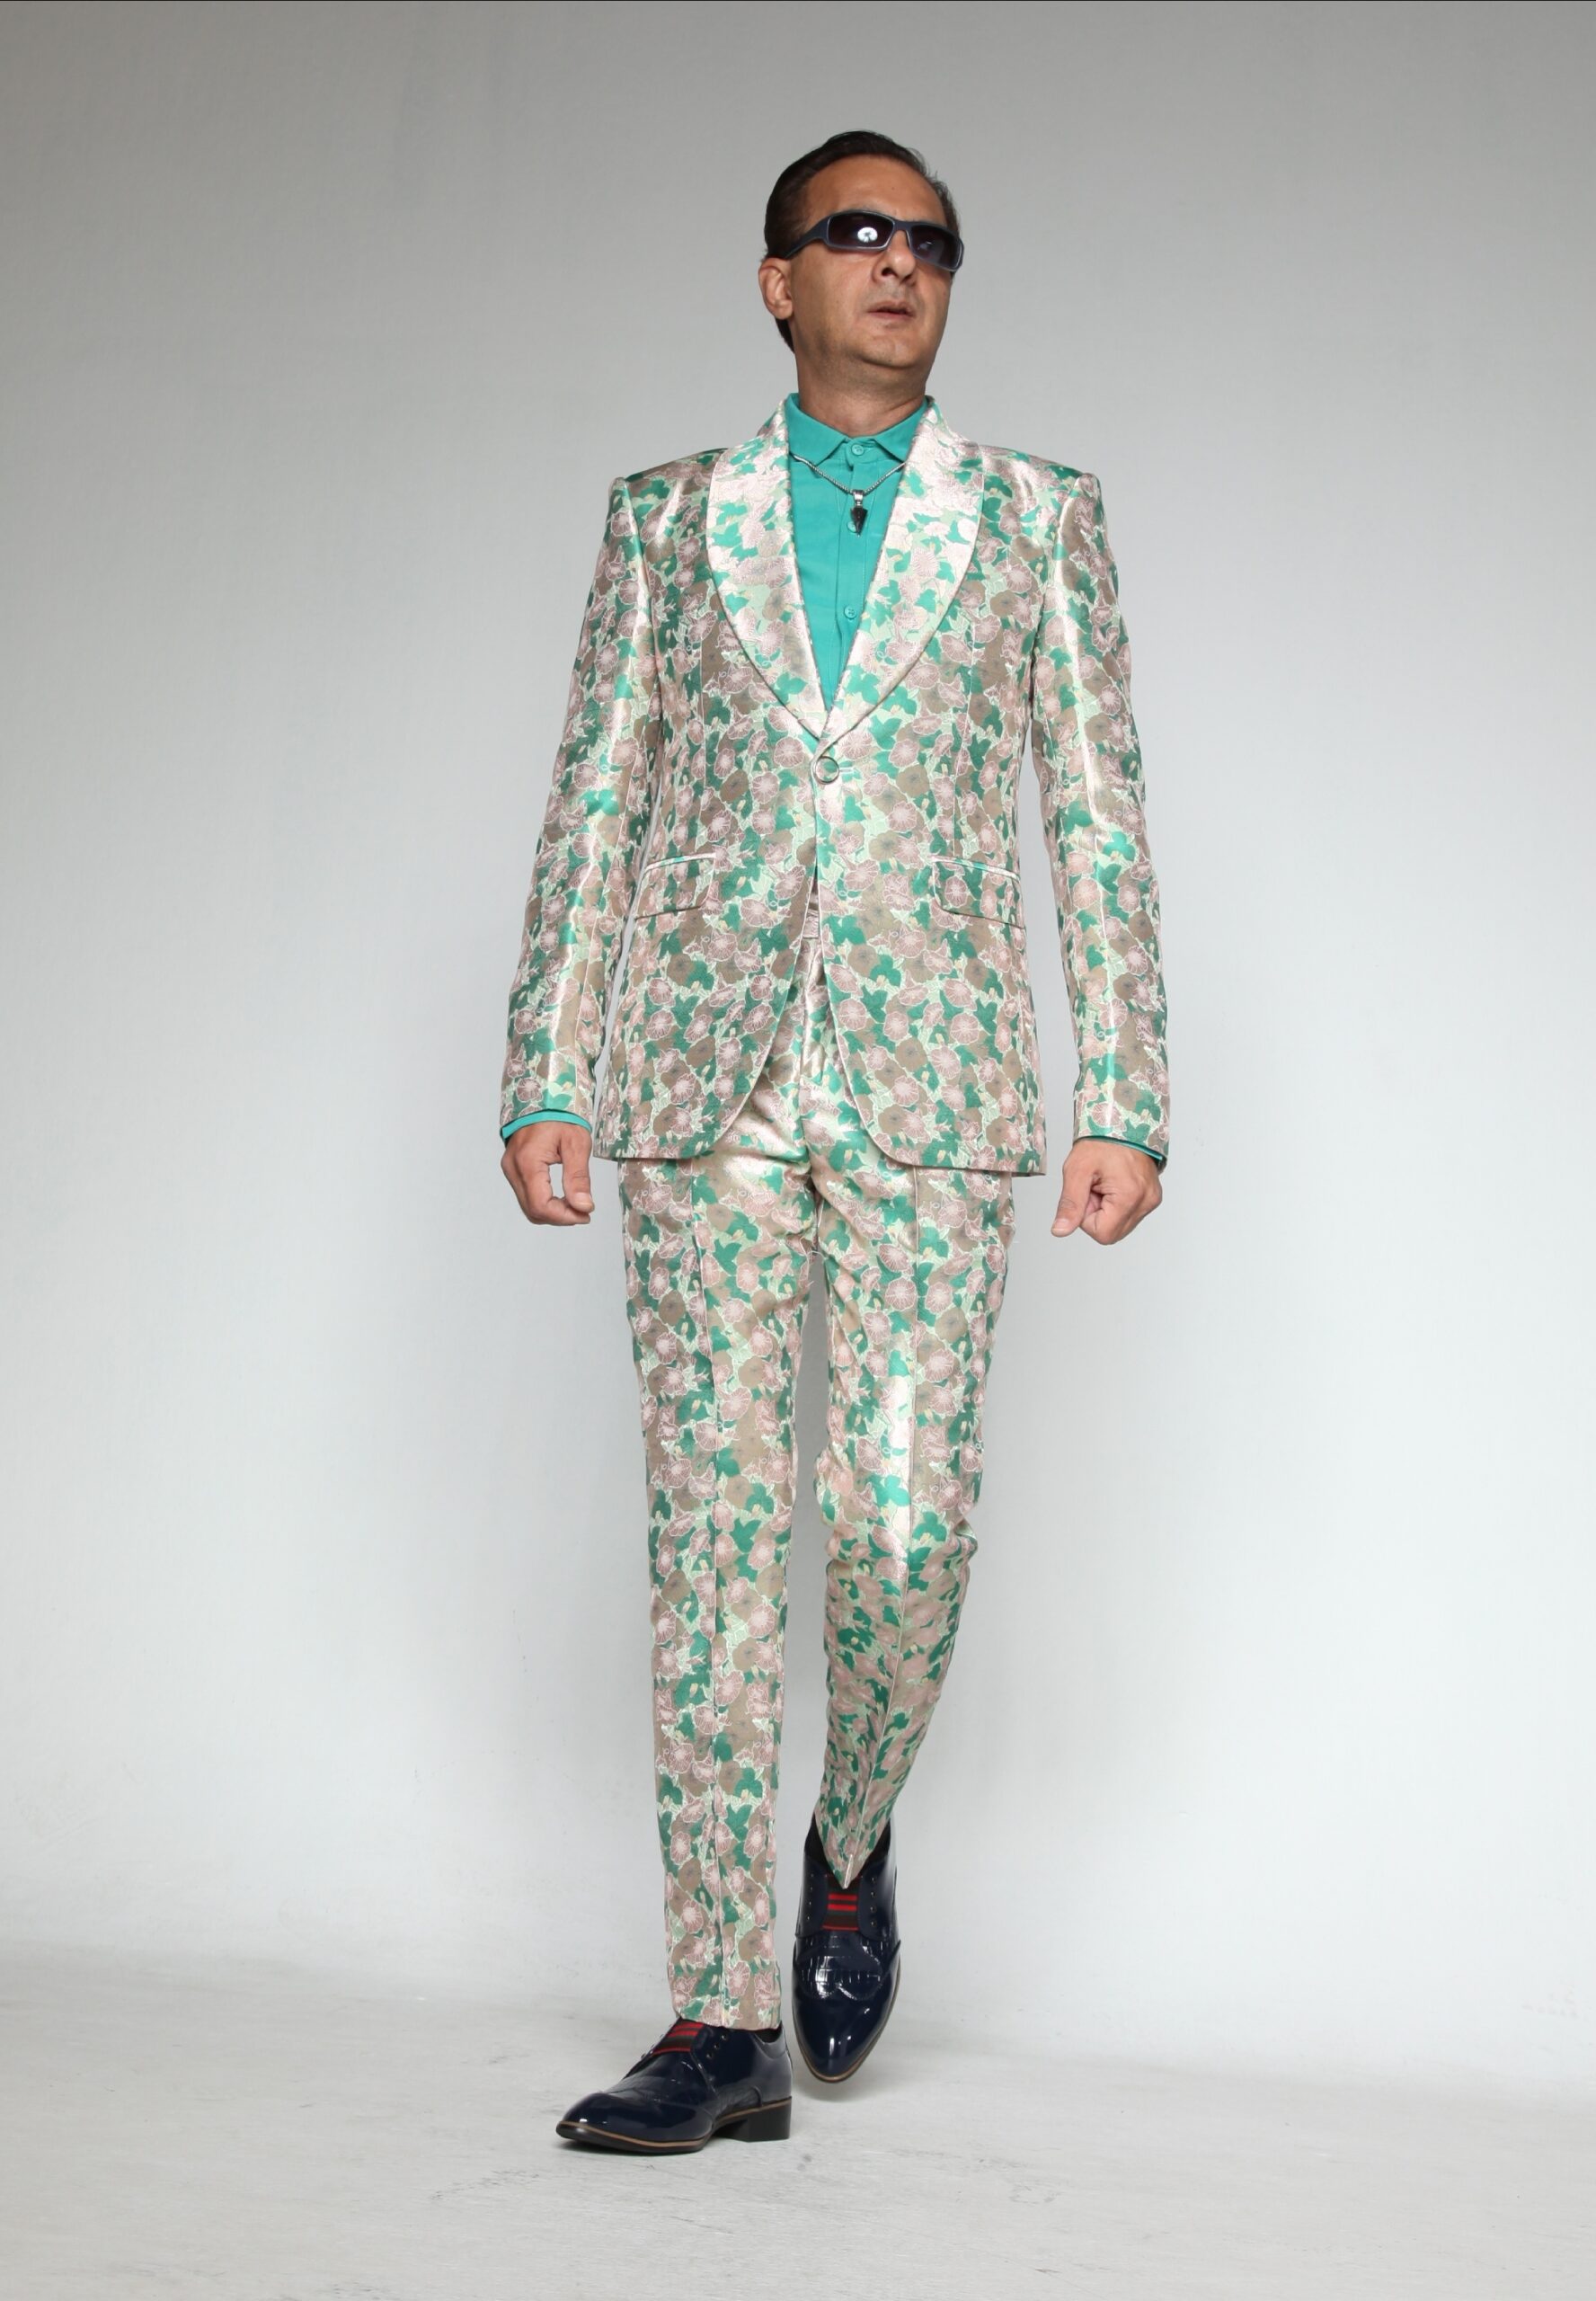 MST-5015-03-rent_rental_hire_tuxedo_suit_black_tie_suit_designer_suits_shop_tailor_tailors_singapore_wedding